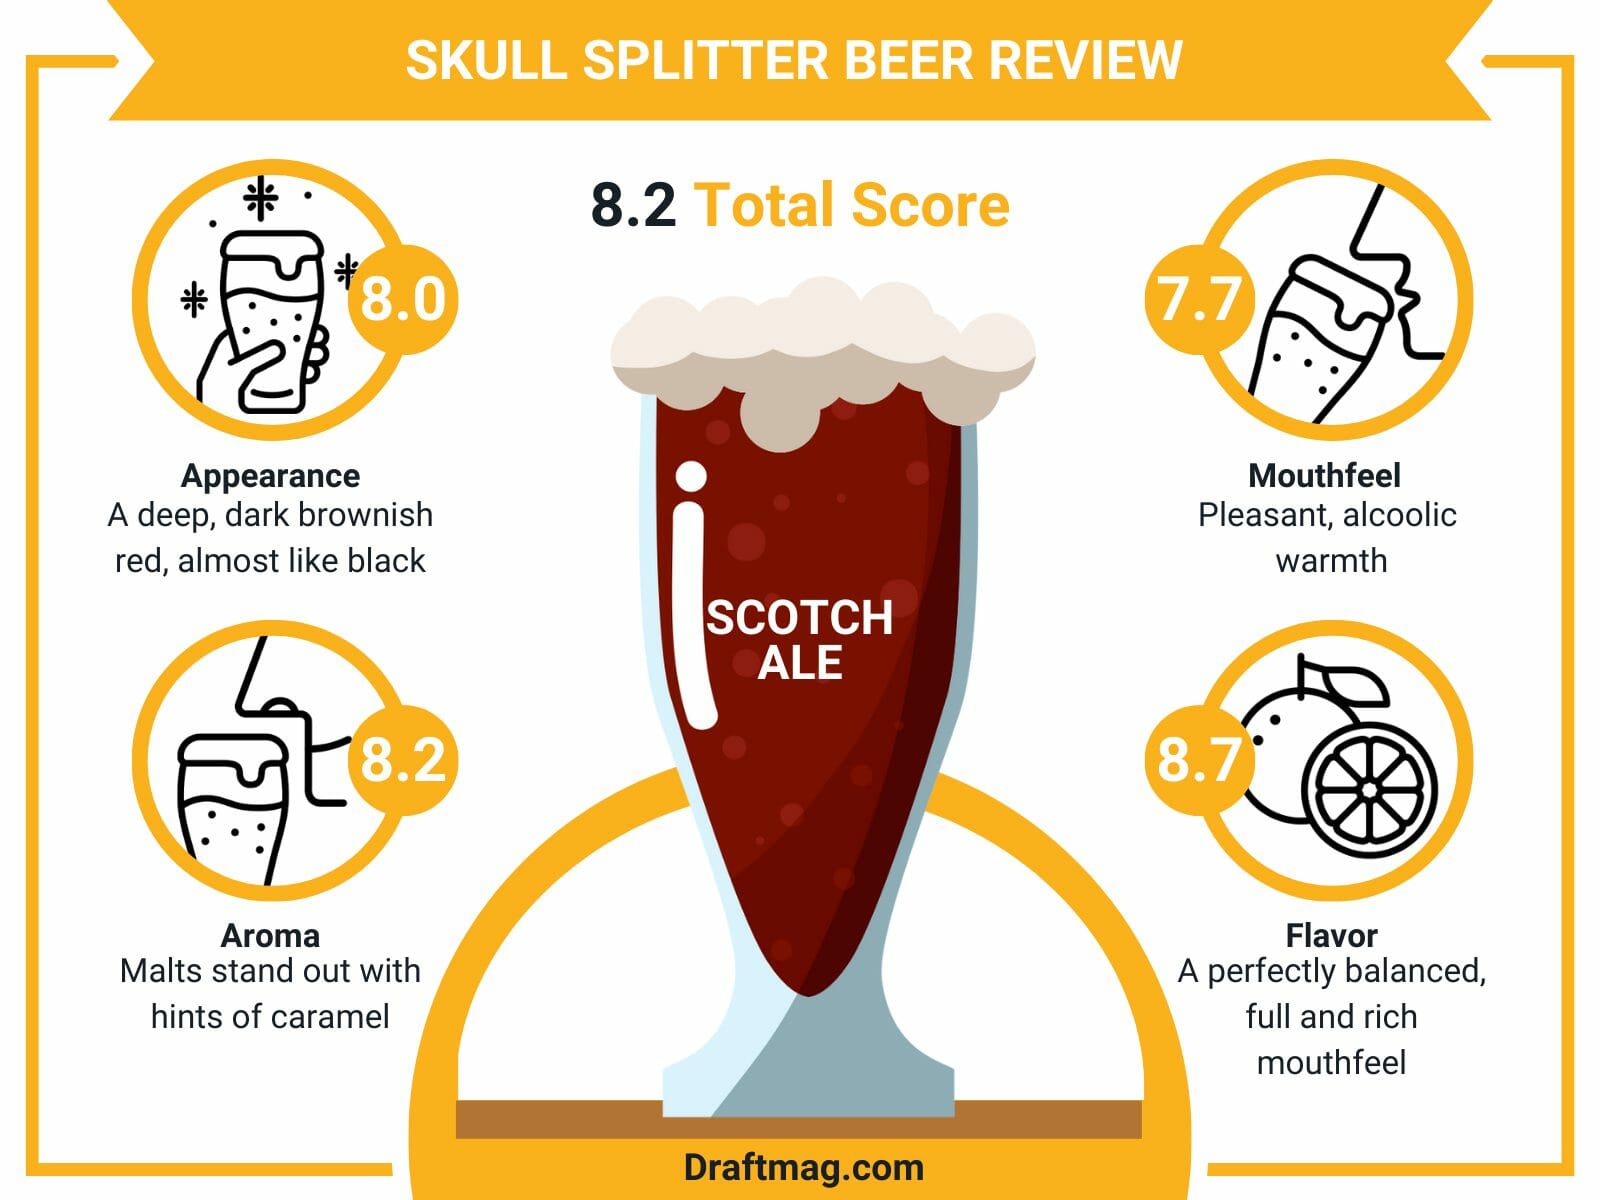 Skull splitter beer review infographic